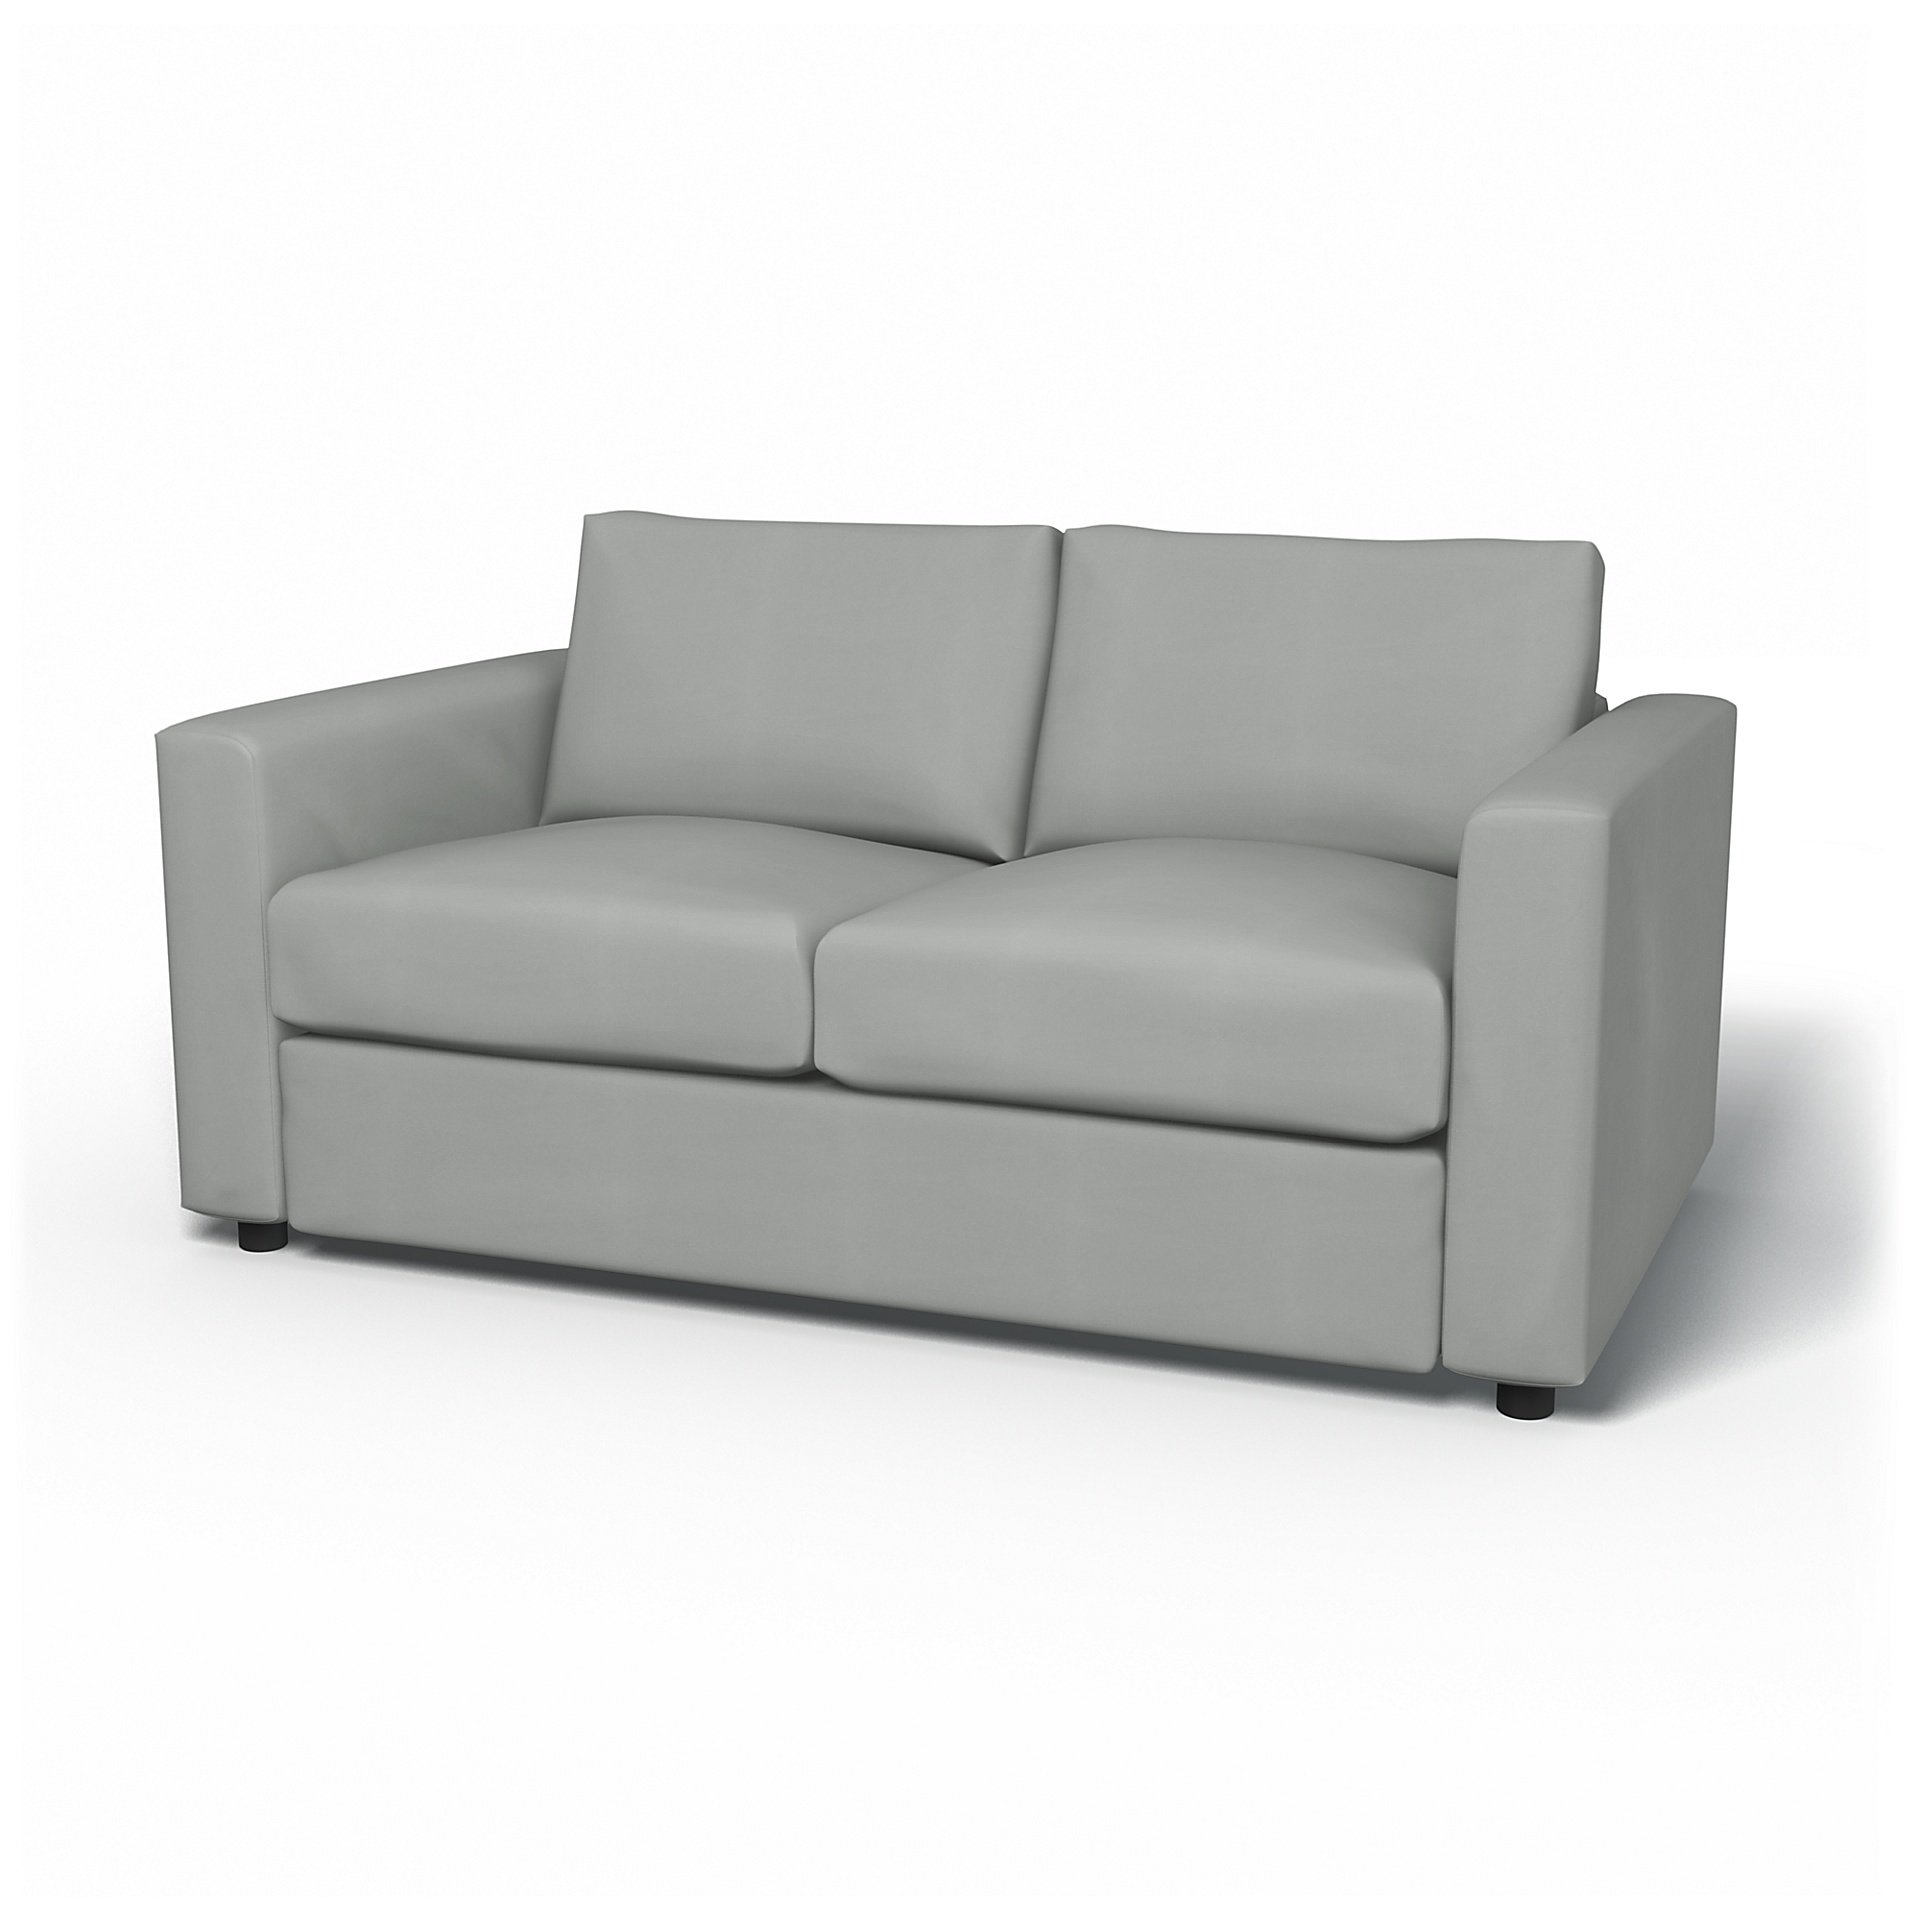 IKEA - Vimle 2 Seater Sofa Cover, Silver Grey, Cotton - Bemz